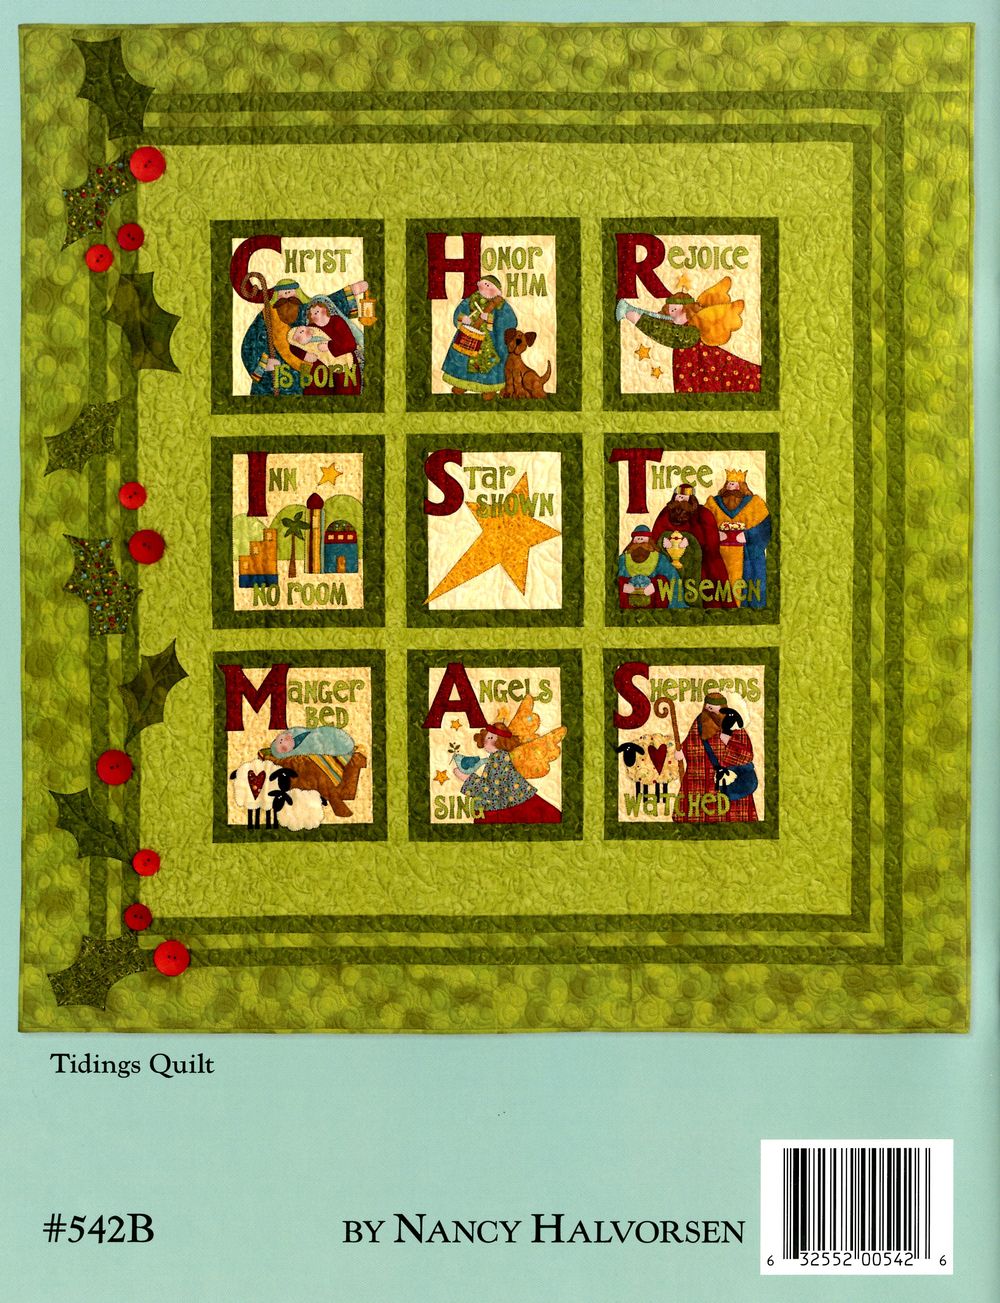 Tidings Quilt Pattern Book by Nancy Halvorsen of Art to Heart